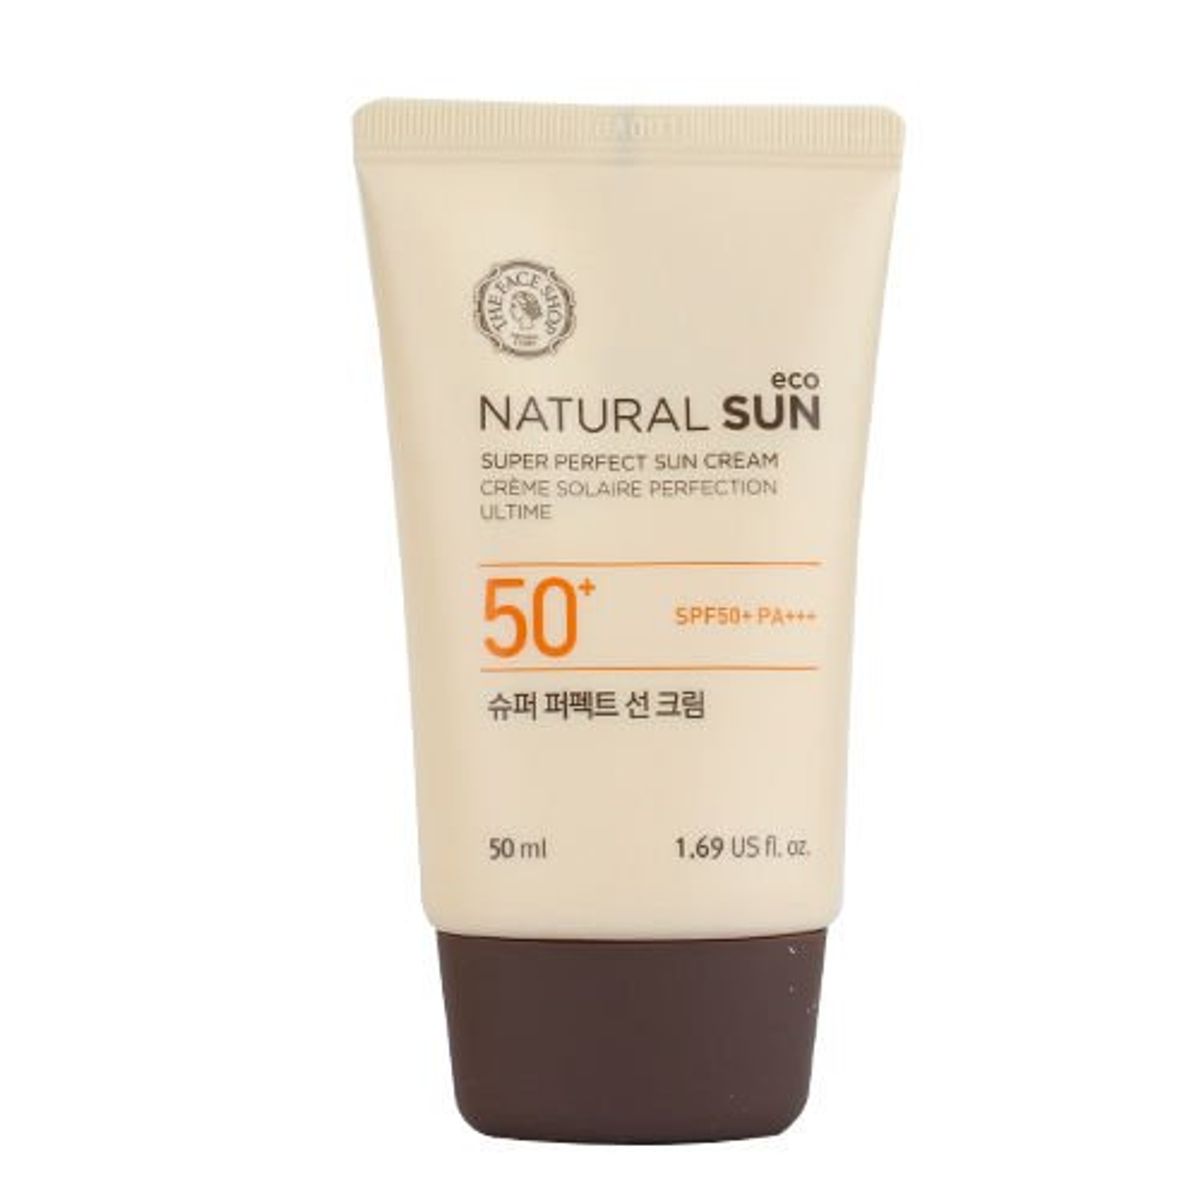 kem-chong-nang-tang-cuong-natural-sun-eco-super-perfect-sun-cream-spf50-pa-50ml-1